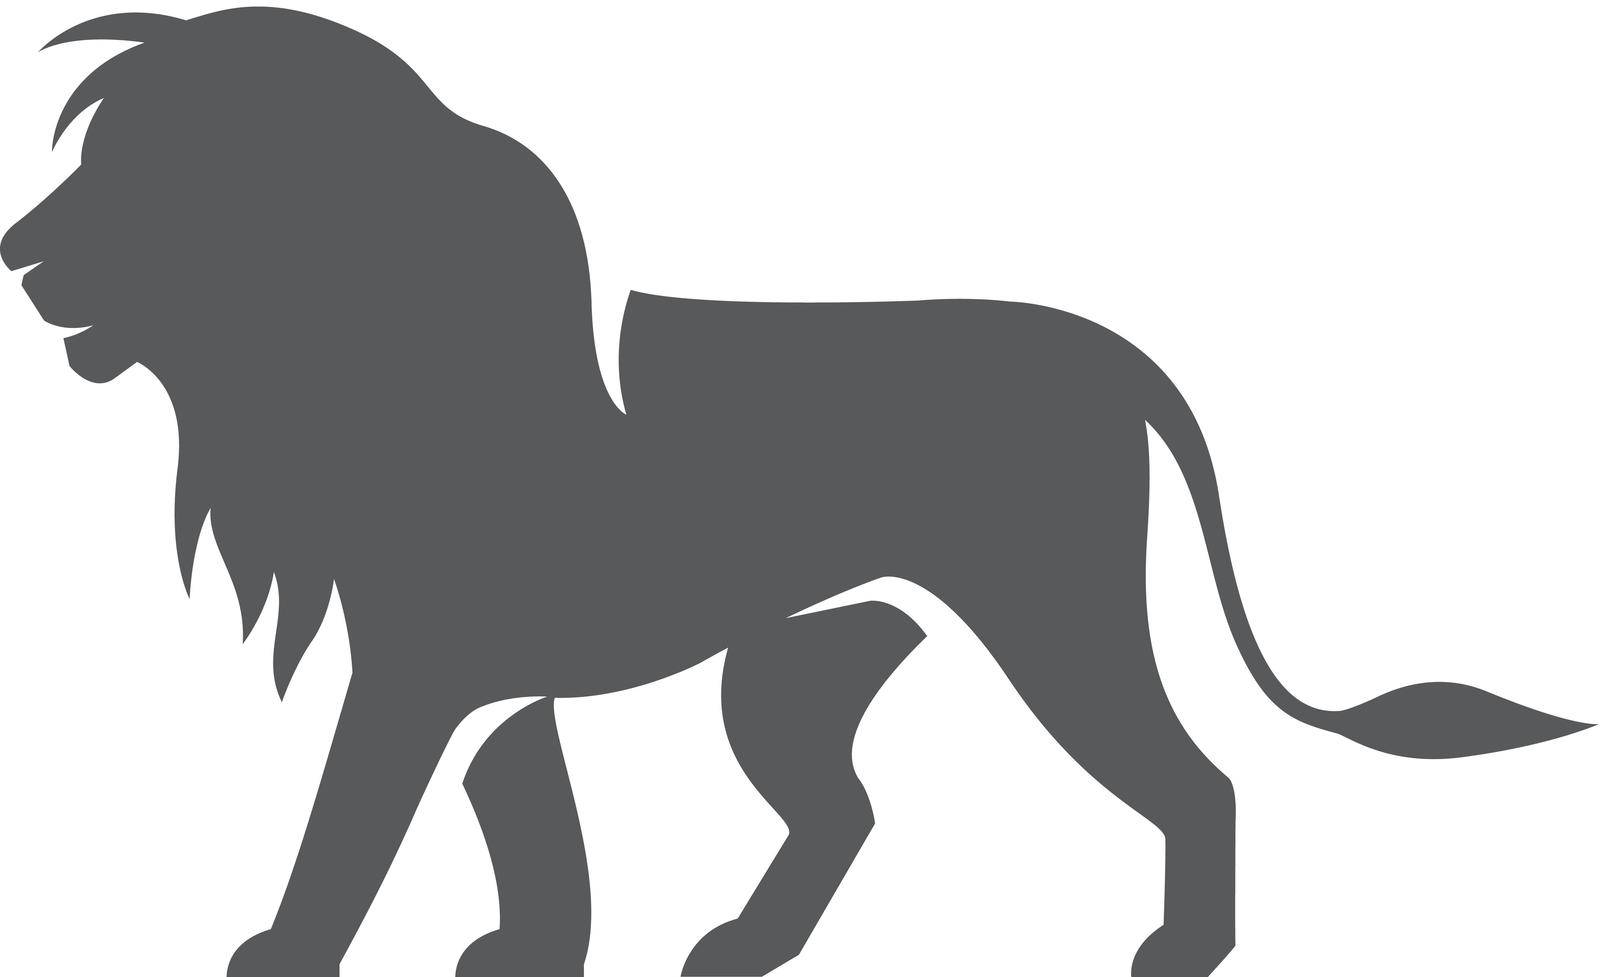 Lion icon in single grey color. SIlhouette logo mammal carnivore jungle zoo safari